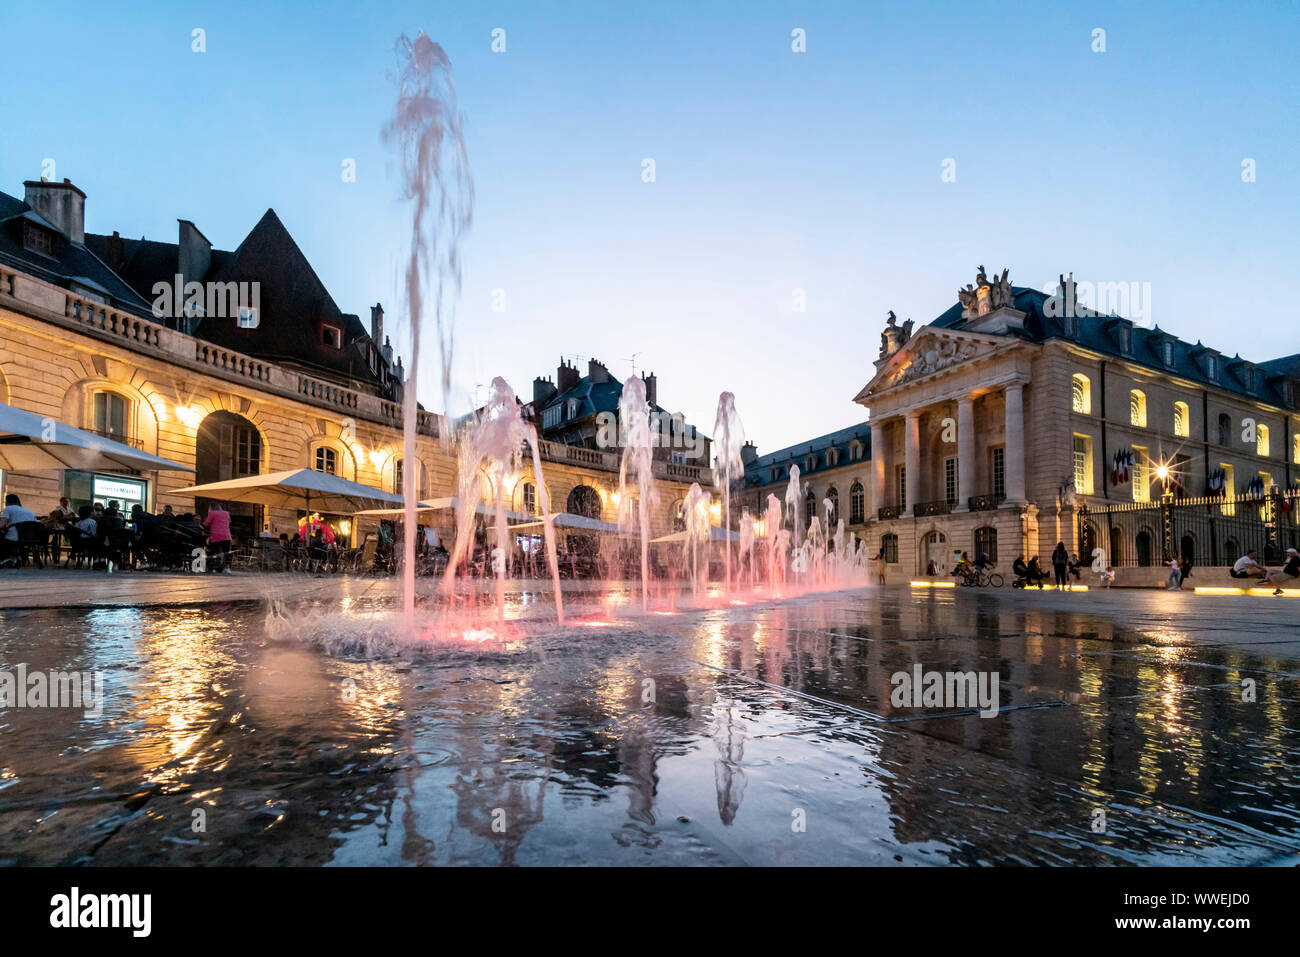 Brunnen auf dem Place de la Liberation in Dijon, Le Palais des Ducs de Bourgogne, ducs Palace, Cote d oder, Burgund, Frankreich Stockfoto